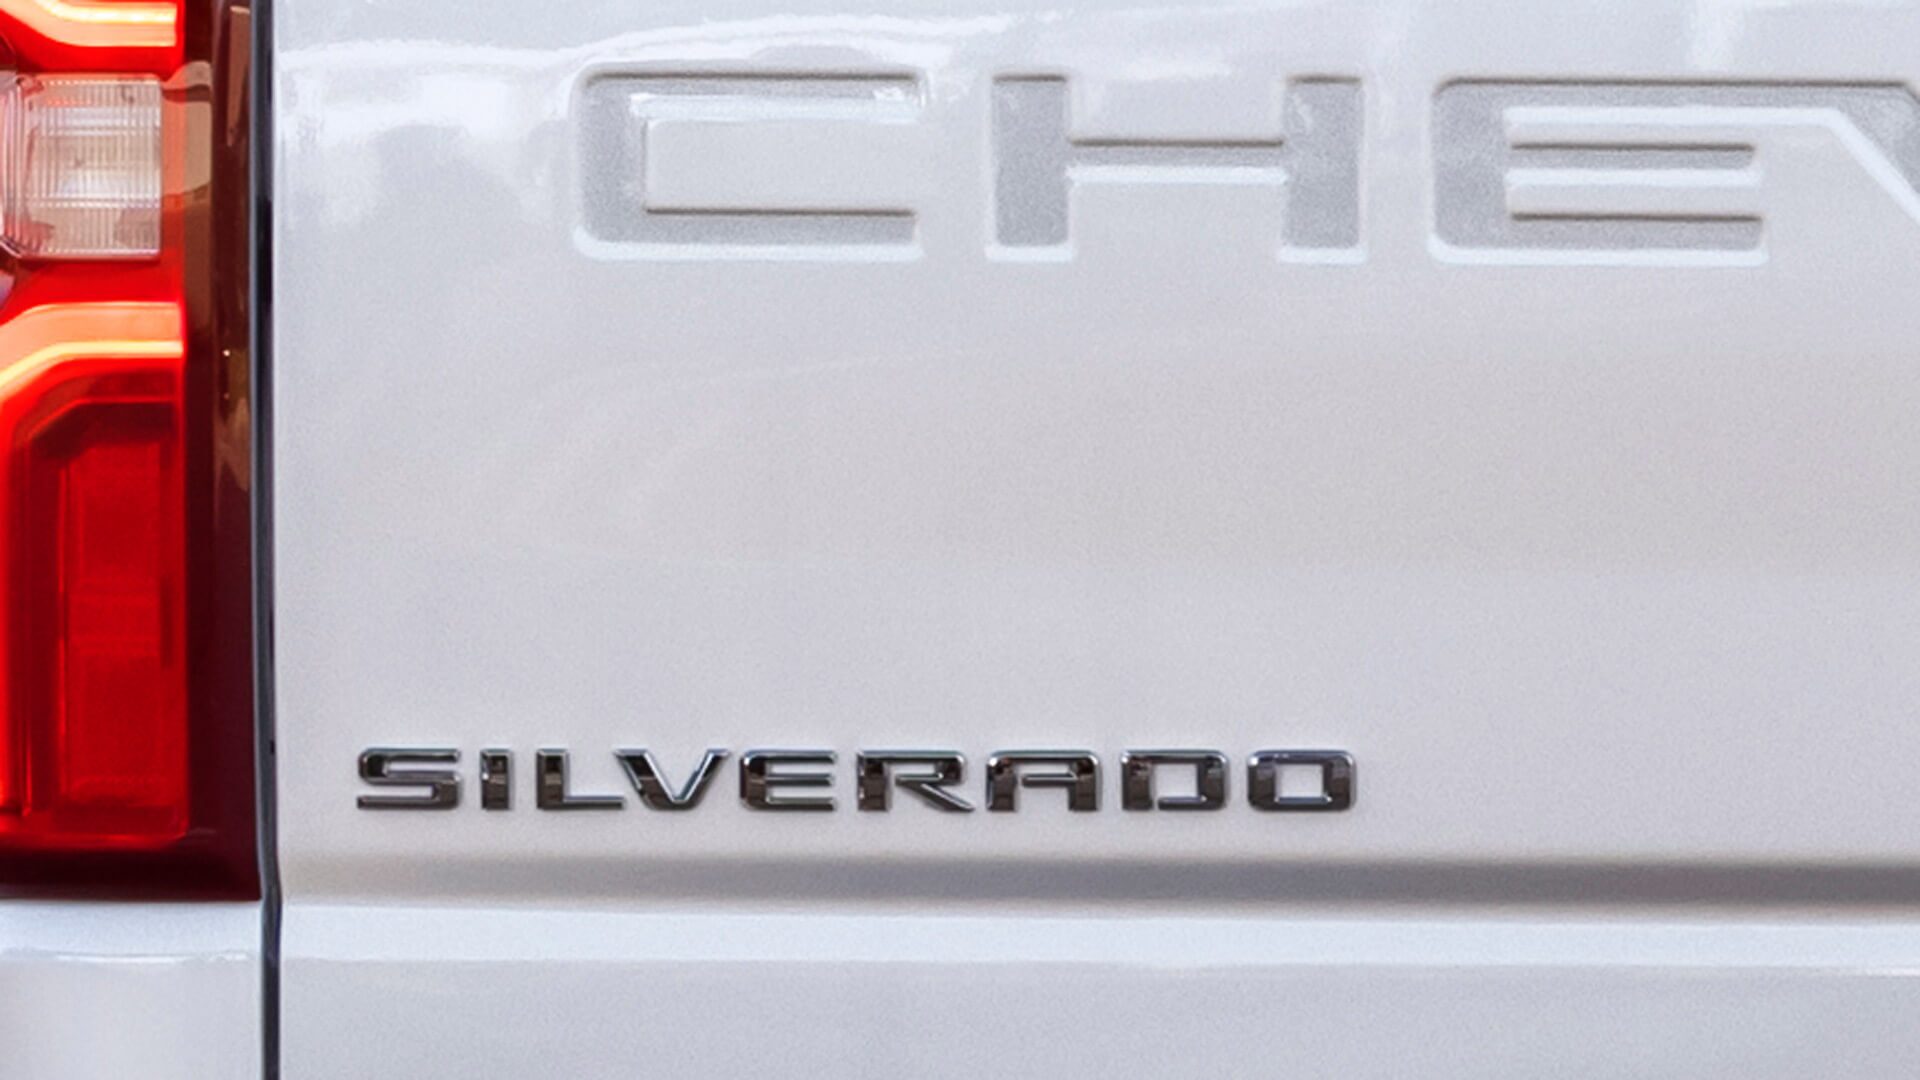 El accesorio original del logo Silverado para el portón trasero de tu camioneta Chevrolet da un aspecto elegante